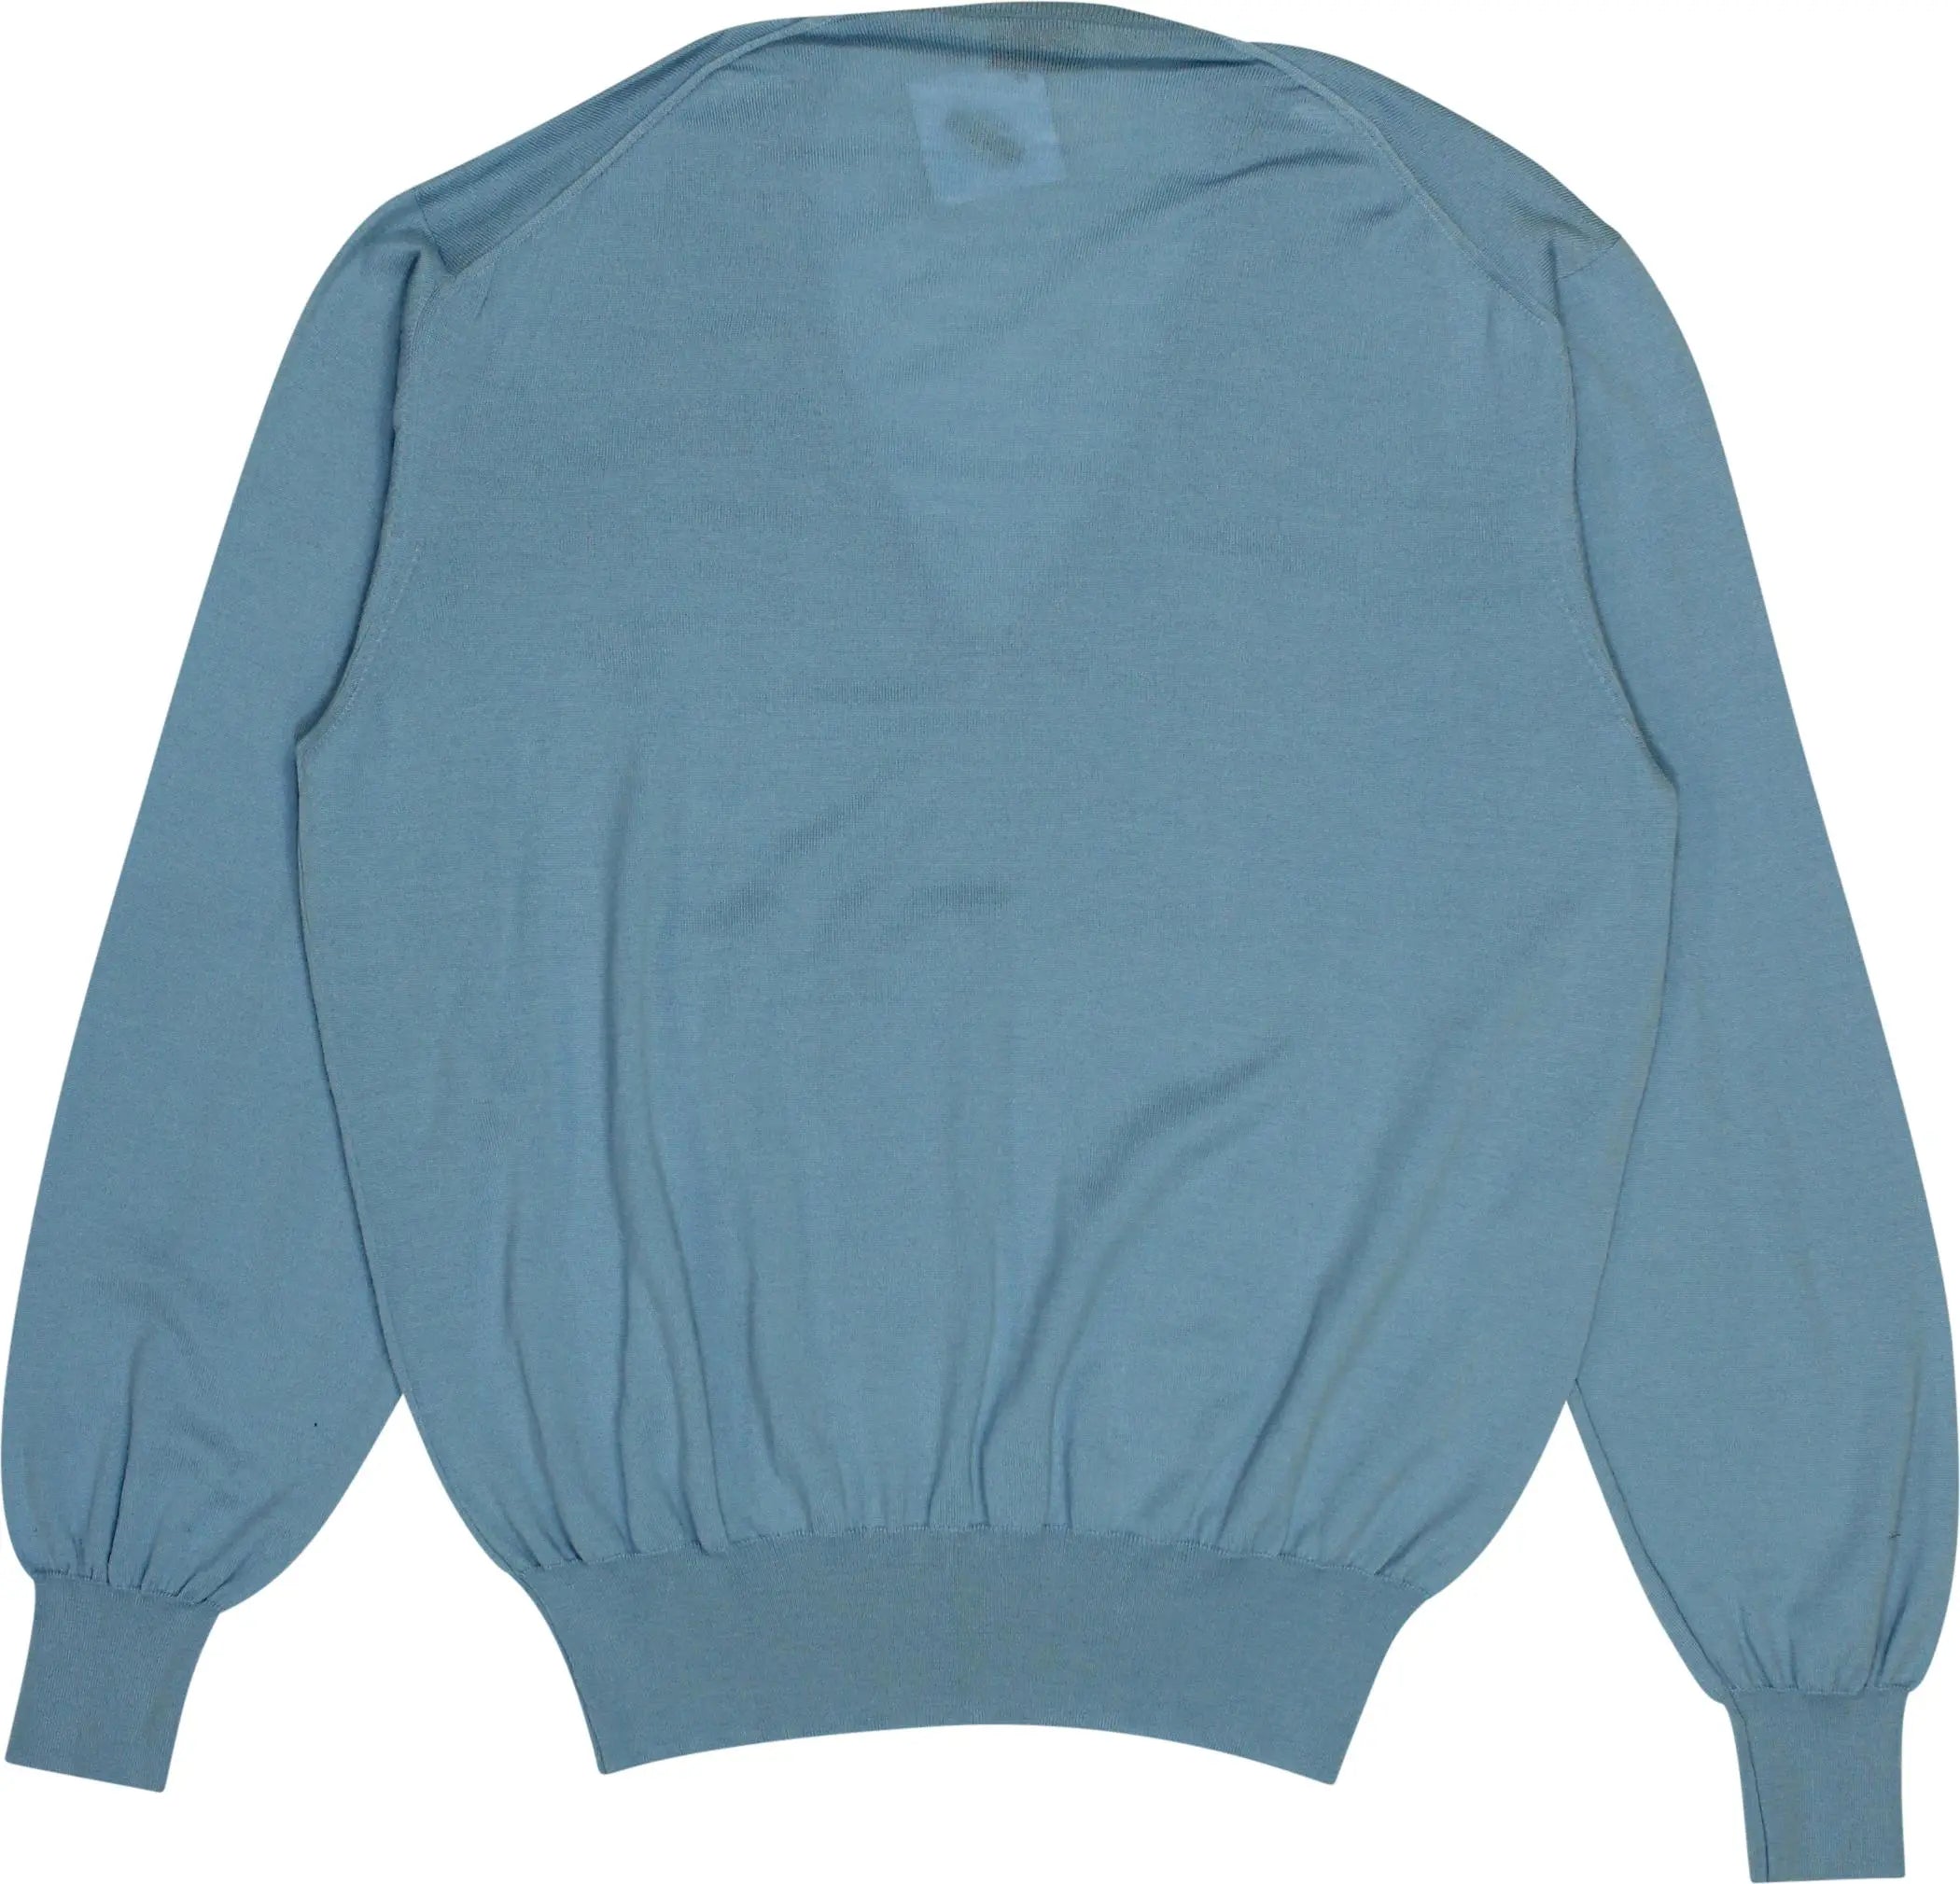 Avon - Blue V-neck Jumper- ThriftTale.com - Vintage and second handclothing